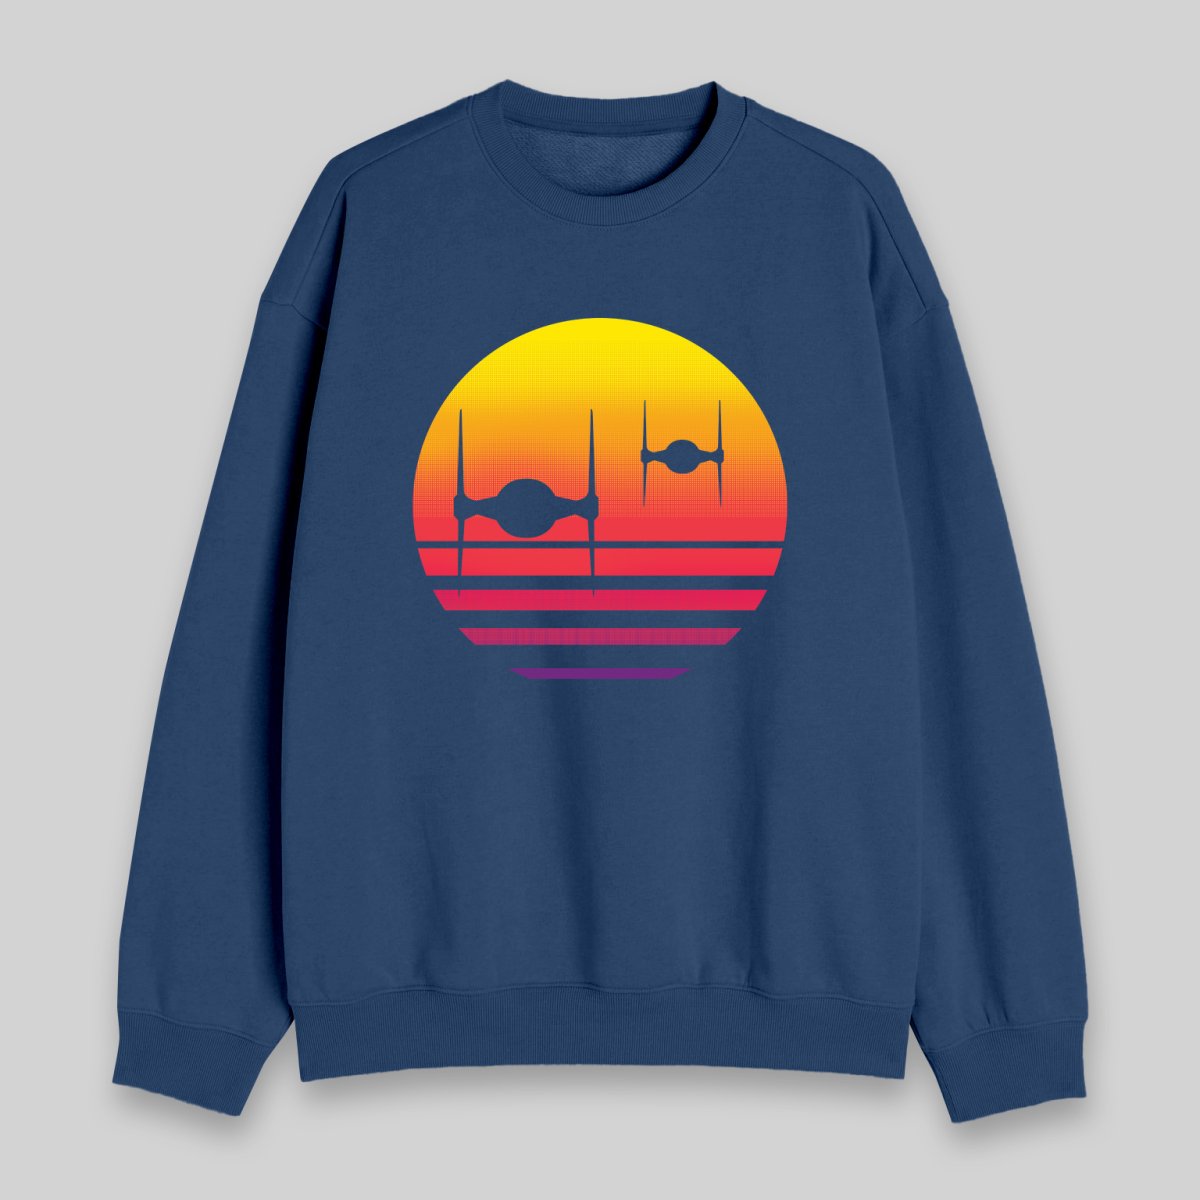 Tie Fighter Sunset Sweatshirt - Geeksoutfit